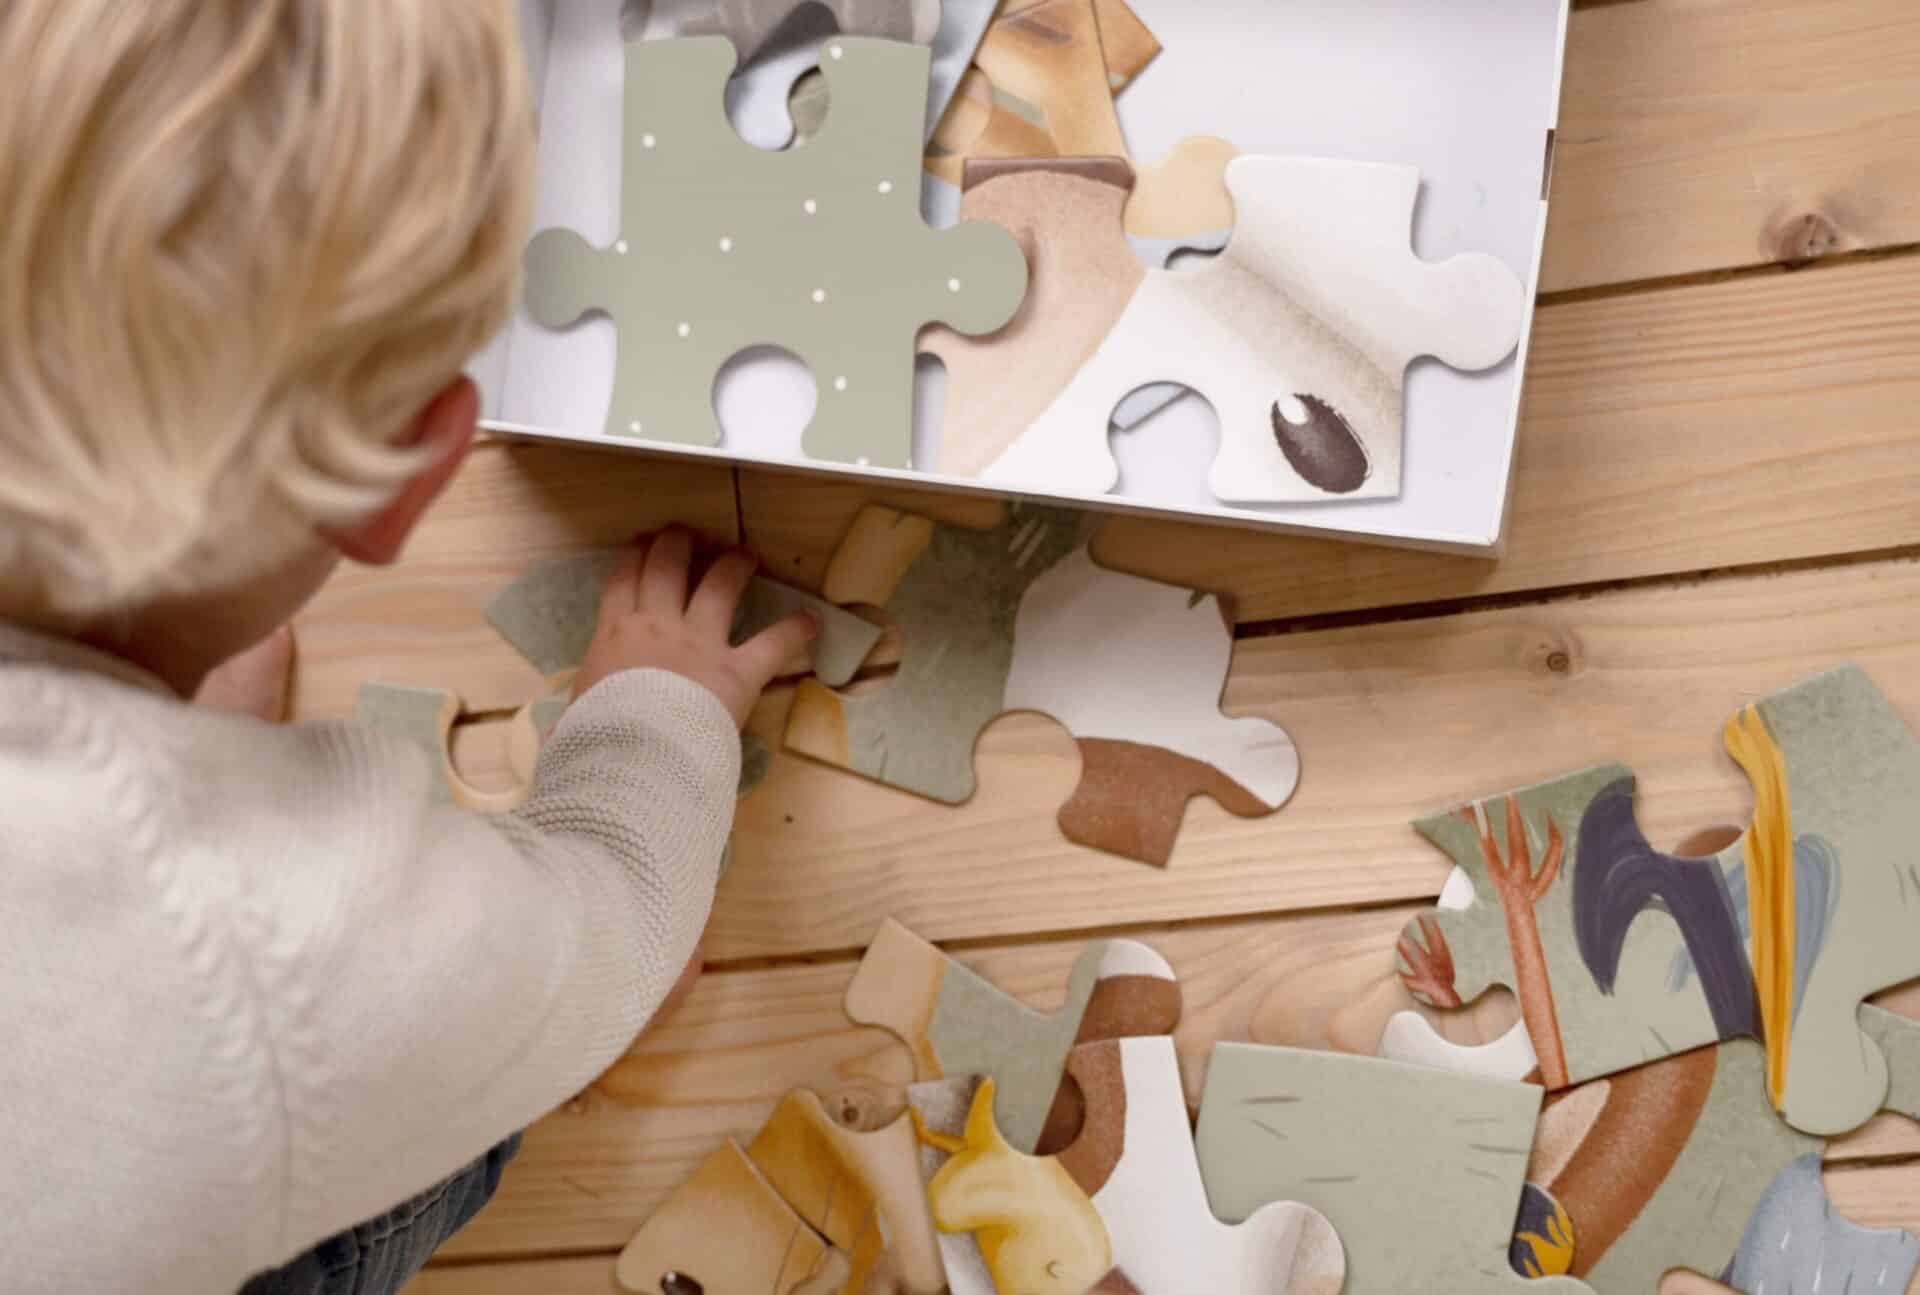 Puzzle de chão XL – Little Farm | Little Dutch Little Dutch Mini-Me - Baby & Kids Store